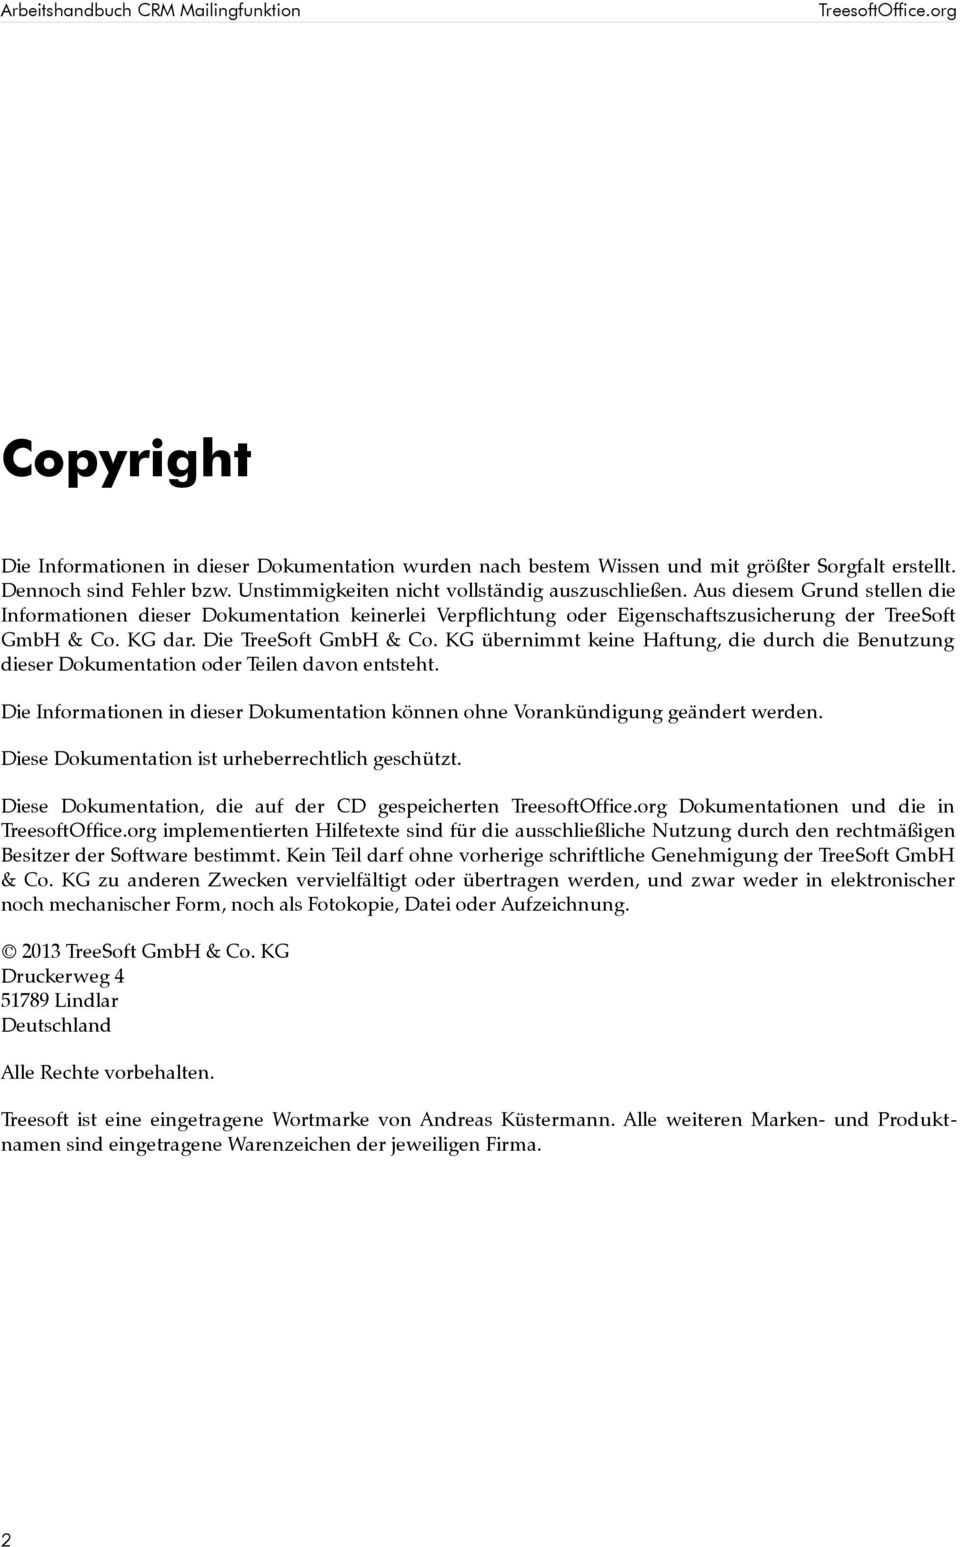 Die TreeSoft GmbH & Co. KG übernimmt keine Haftung, die durch die Benutzung dieser Dokumentation oder Teilen davon entsteht.